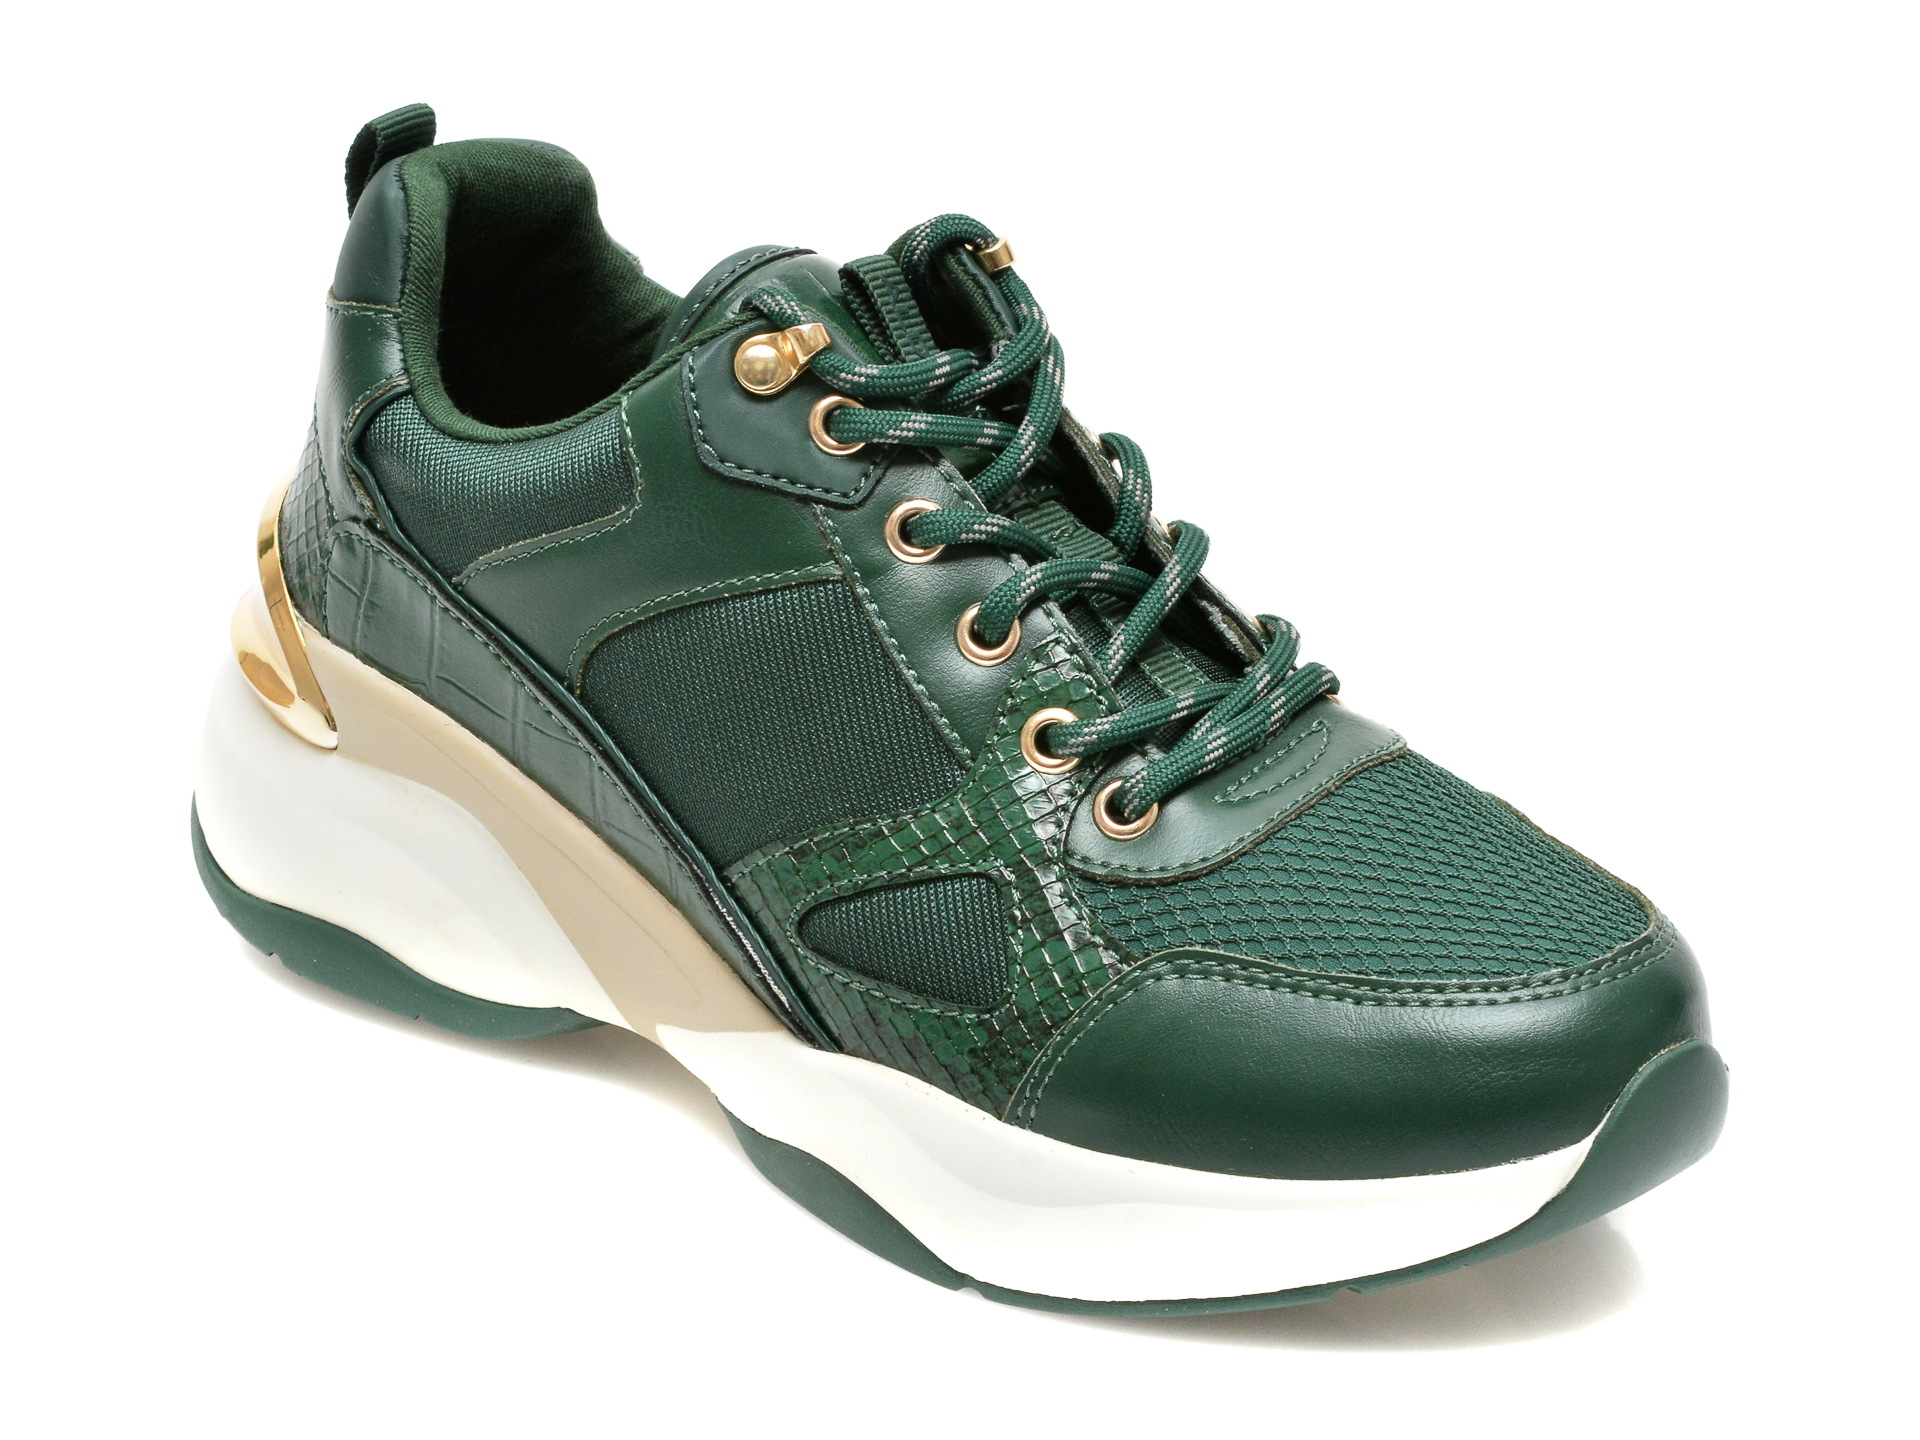 Pantofi sport ALDO verzi, ASTIARI300, din material textil si piele ecologica Aldo imagine reduceri